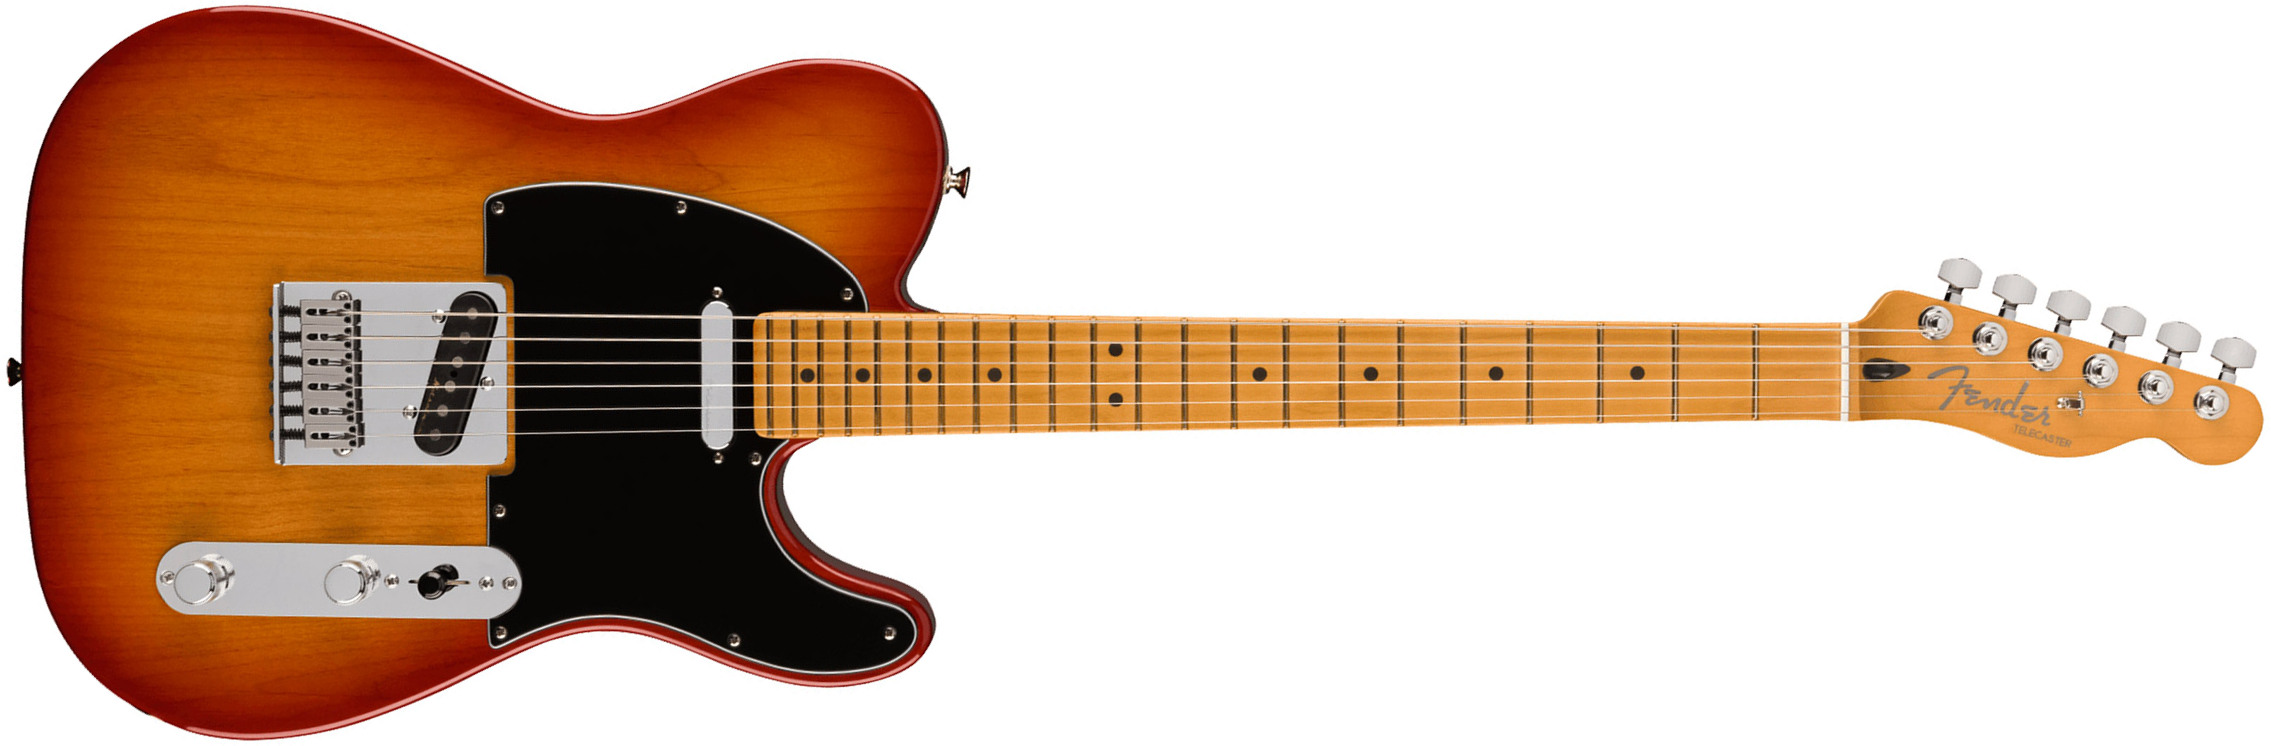 Fender Tele Player Plus Mex 2023 2s Ht Mn - Sienna Sunburst - Televorm elektrische gitaar - Main picture